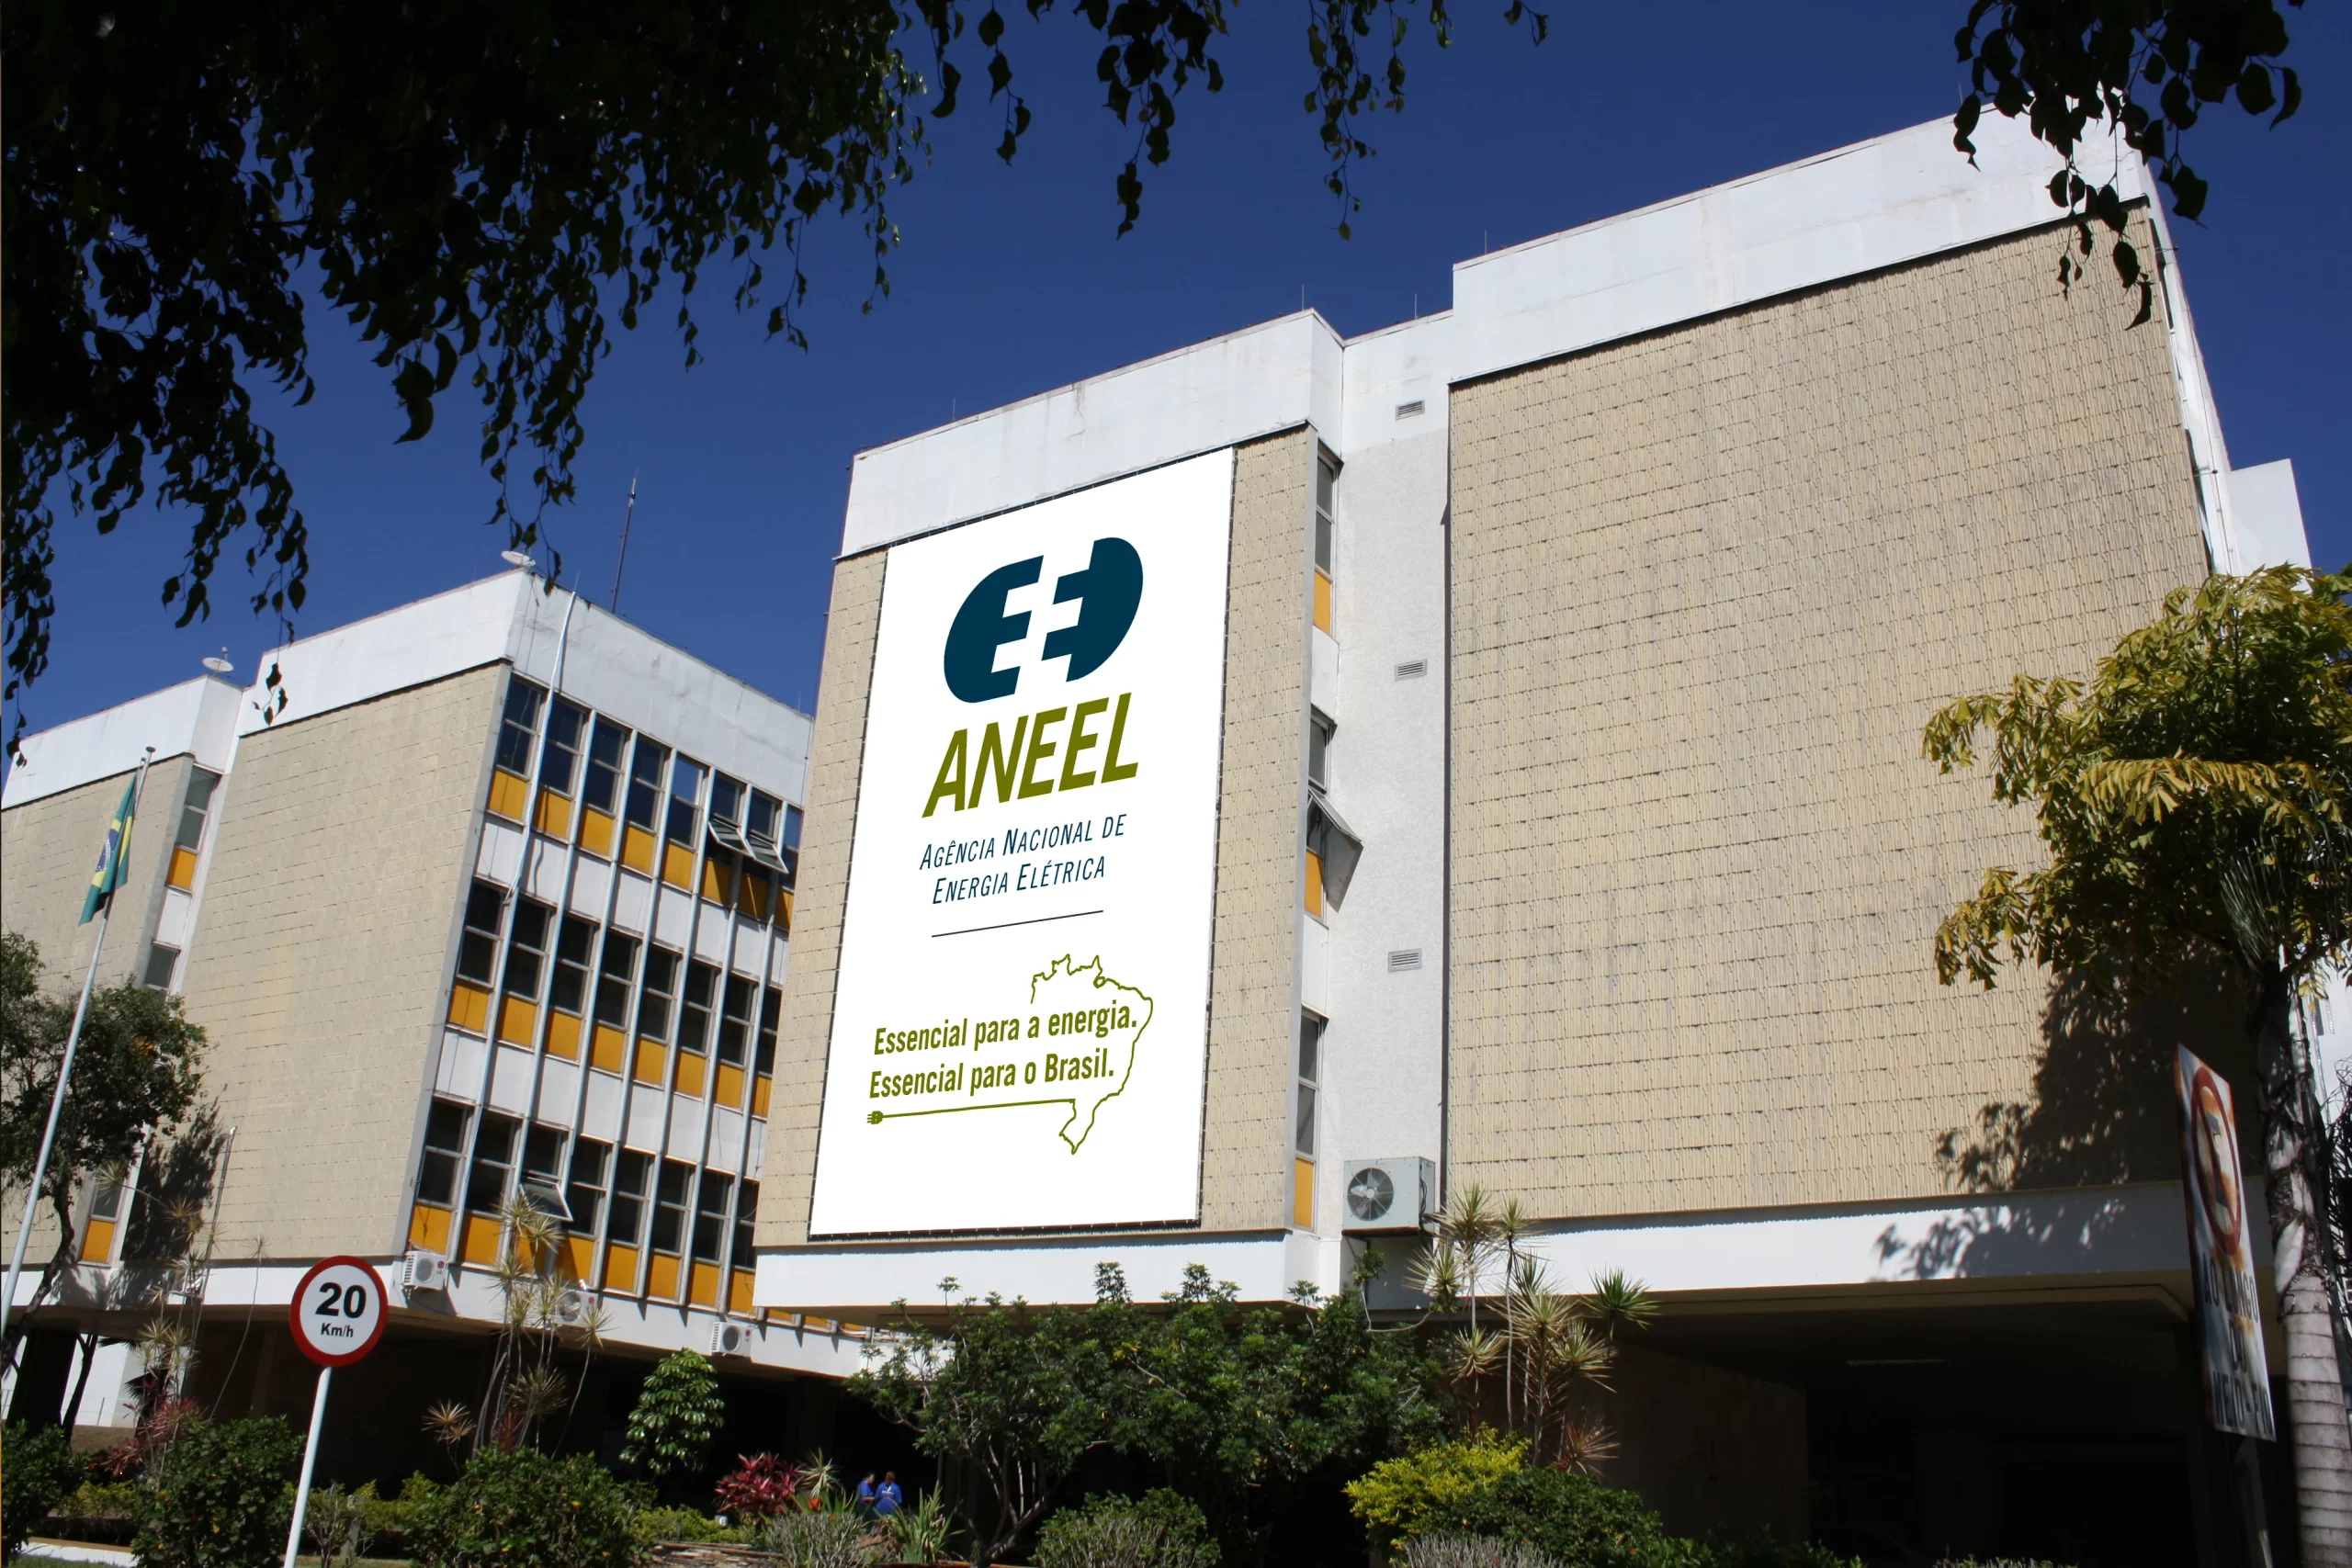 Aneel e ANP enfrentam defasagem de até 25% do quadro de servidores. Na imagem: Fachada da sede da AneelFachada da sede da Aneel, em Brasília, DF (Foto: Divulgação)